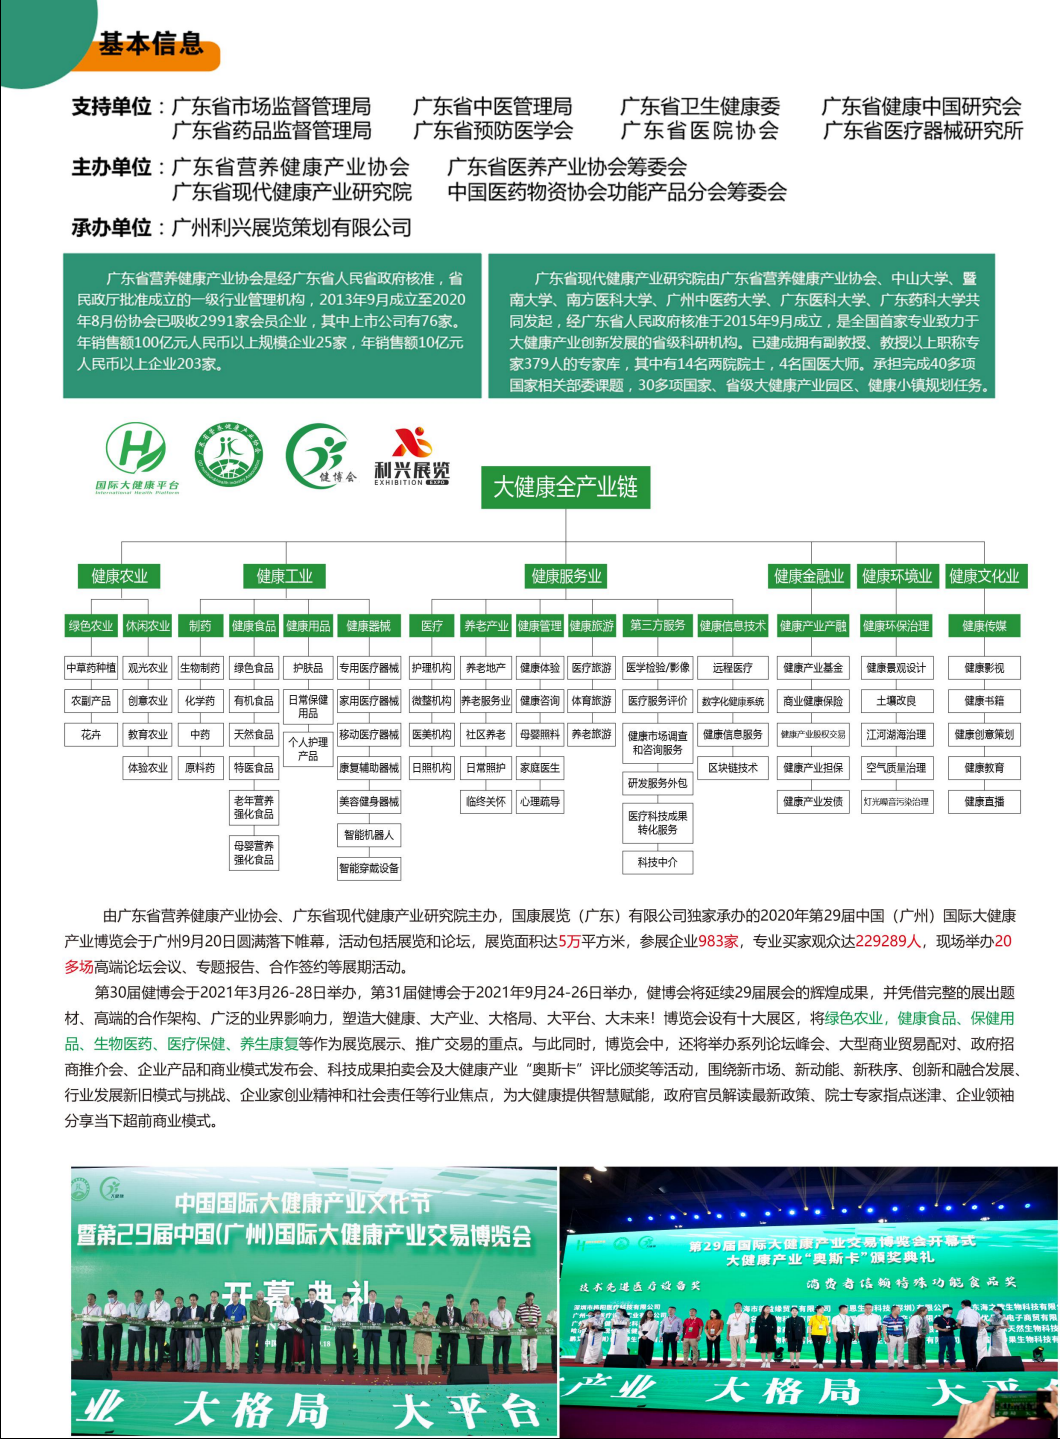 2021第31届(广东)大健康产业博览会暨医养健康展